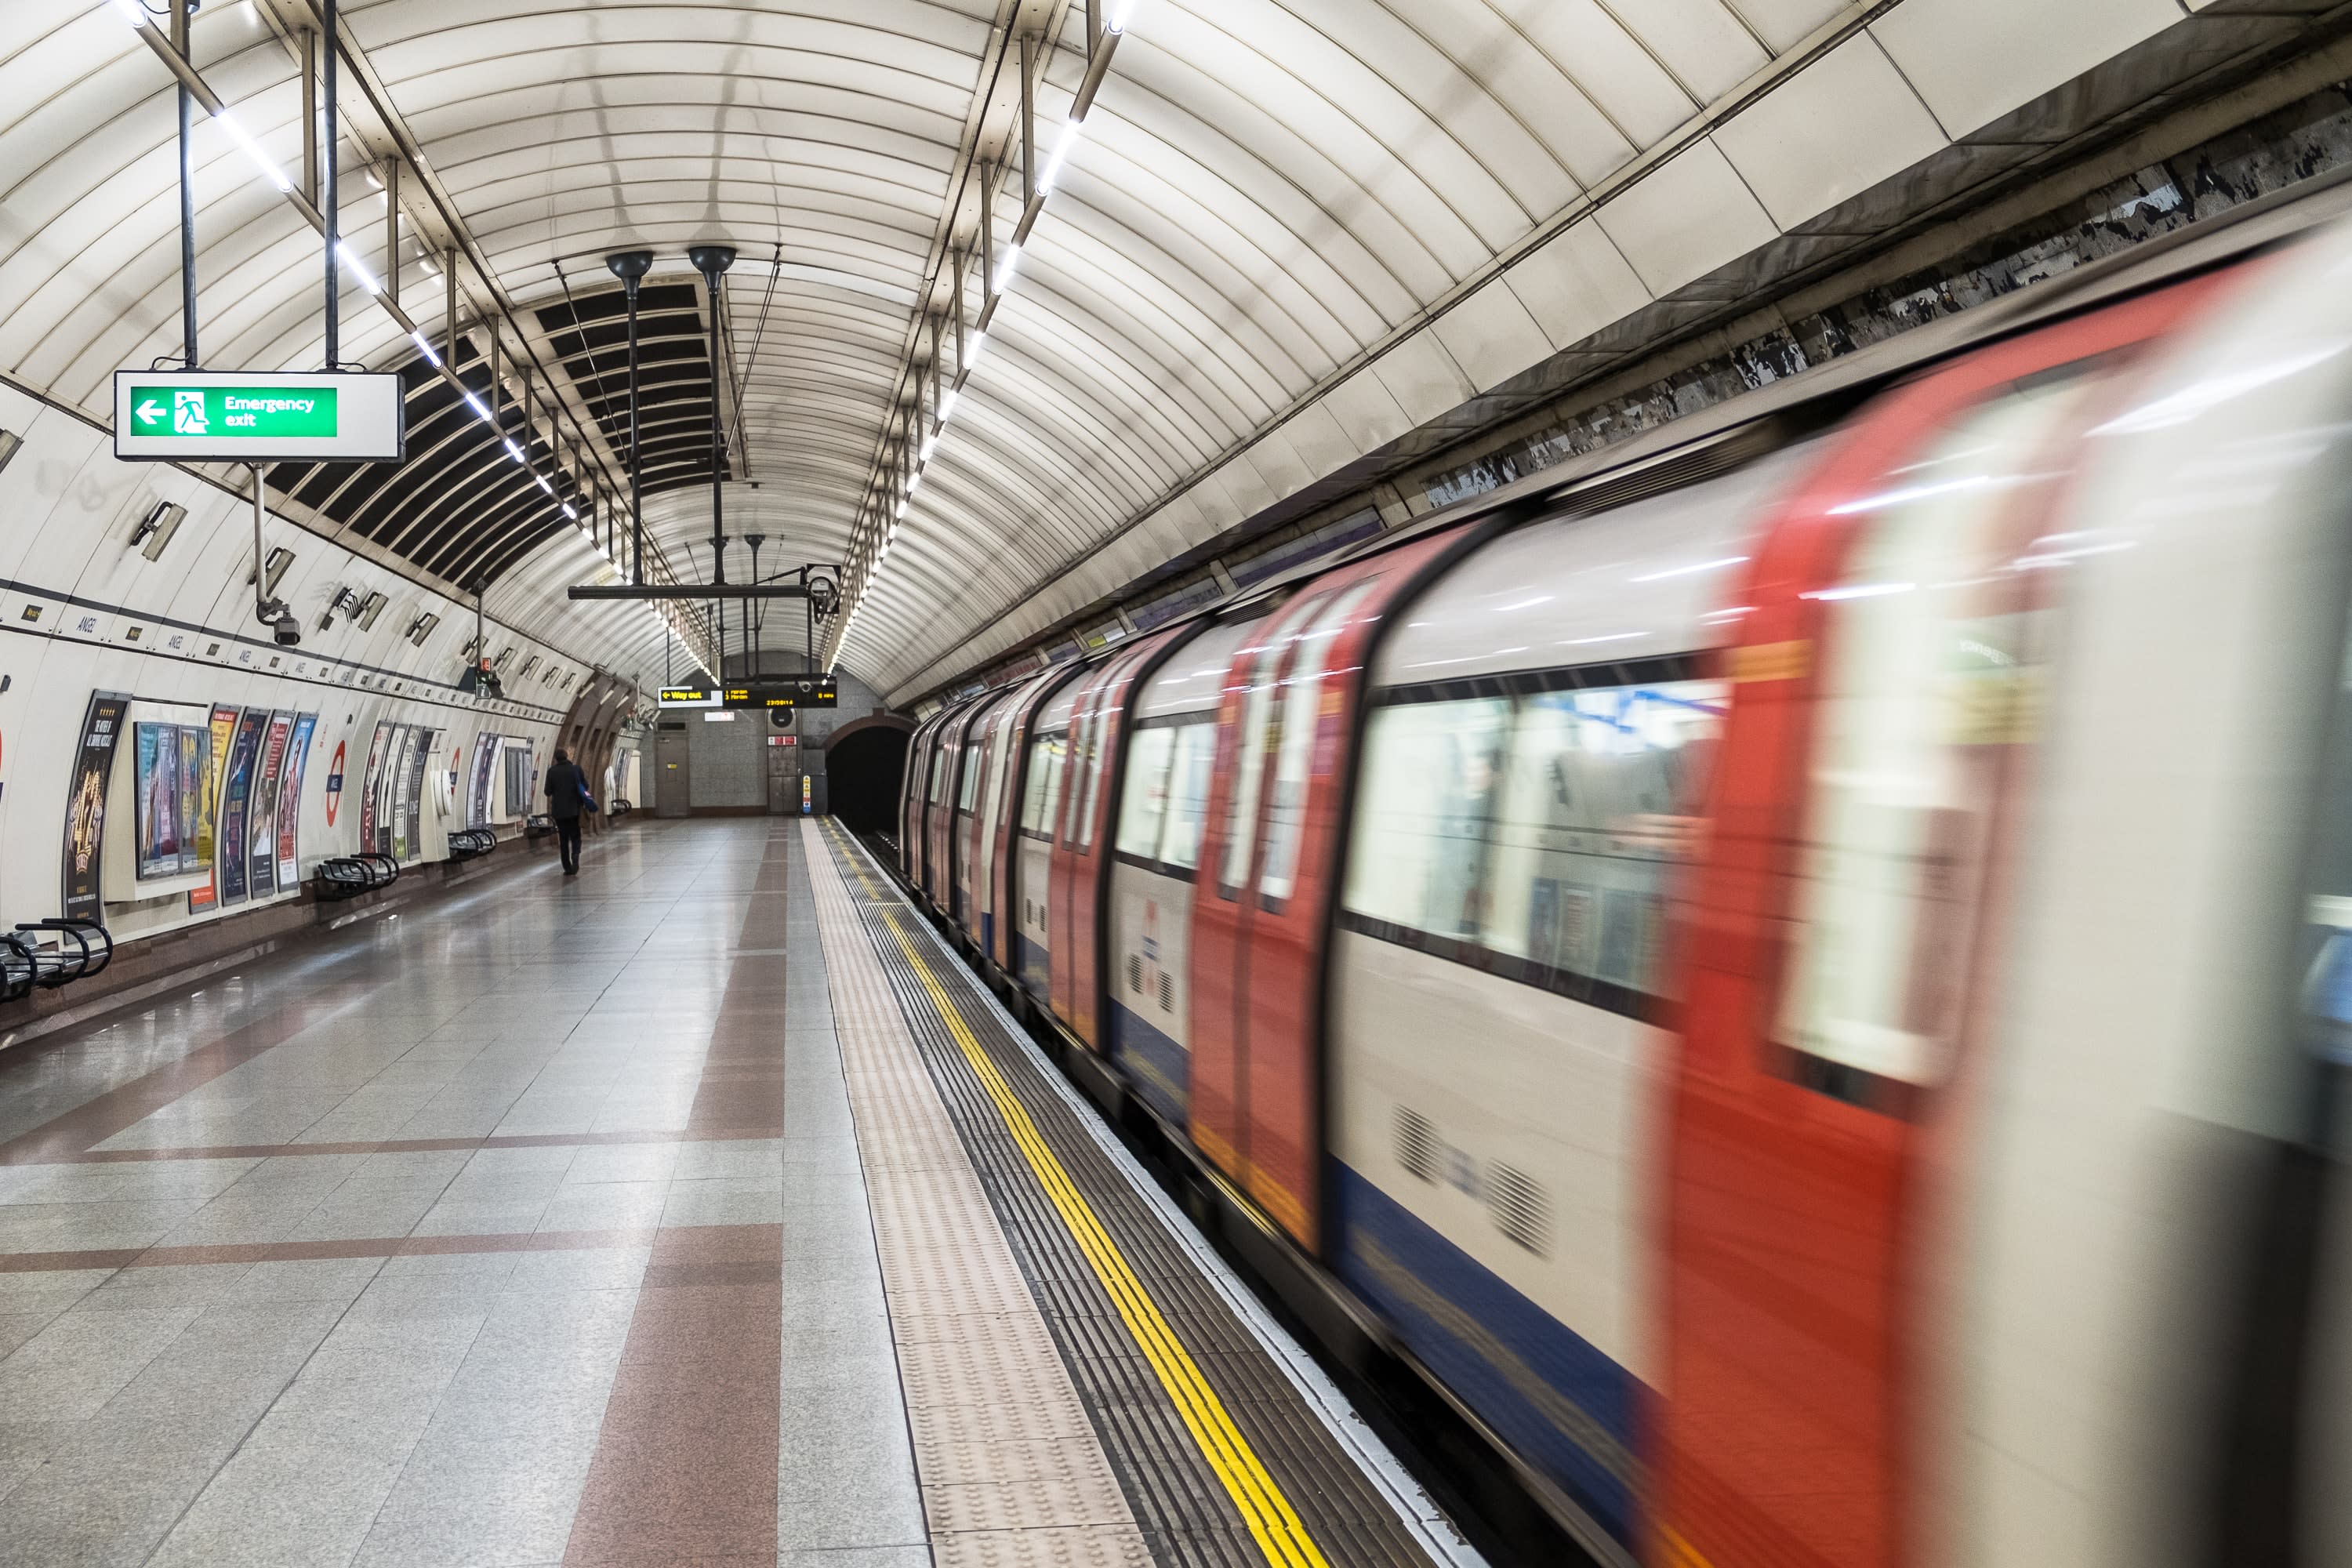 London underground train service 